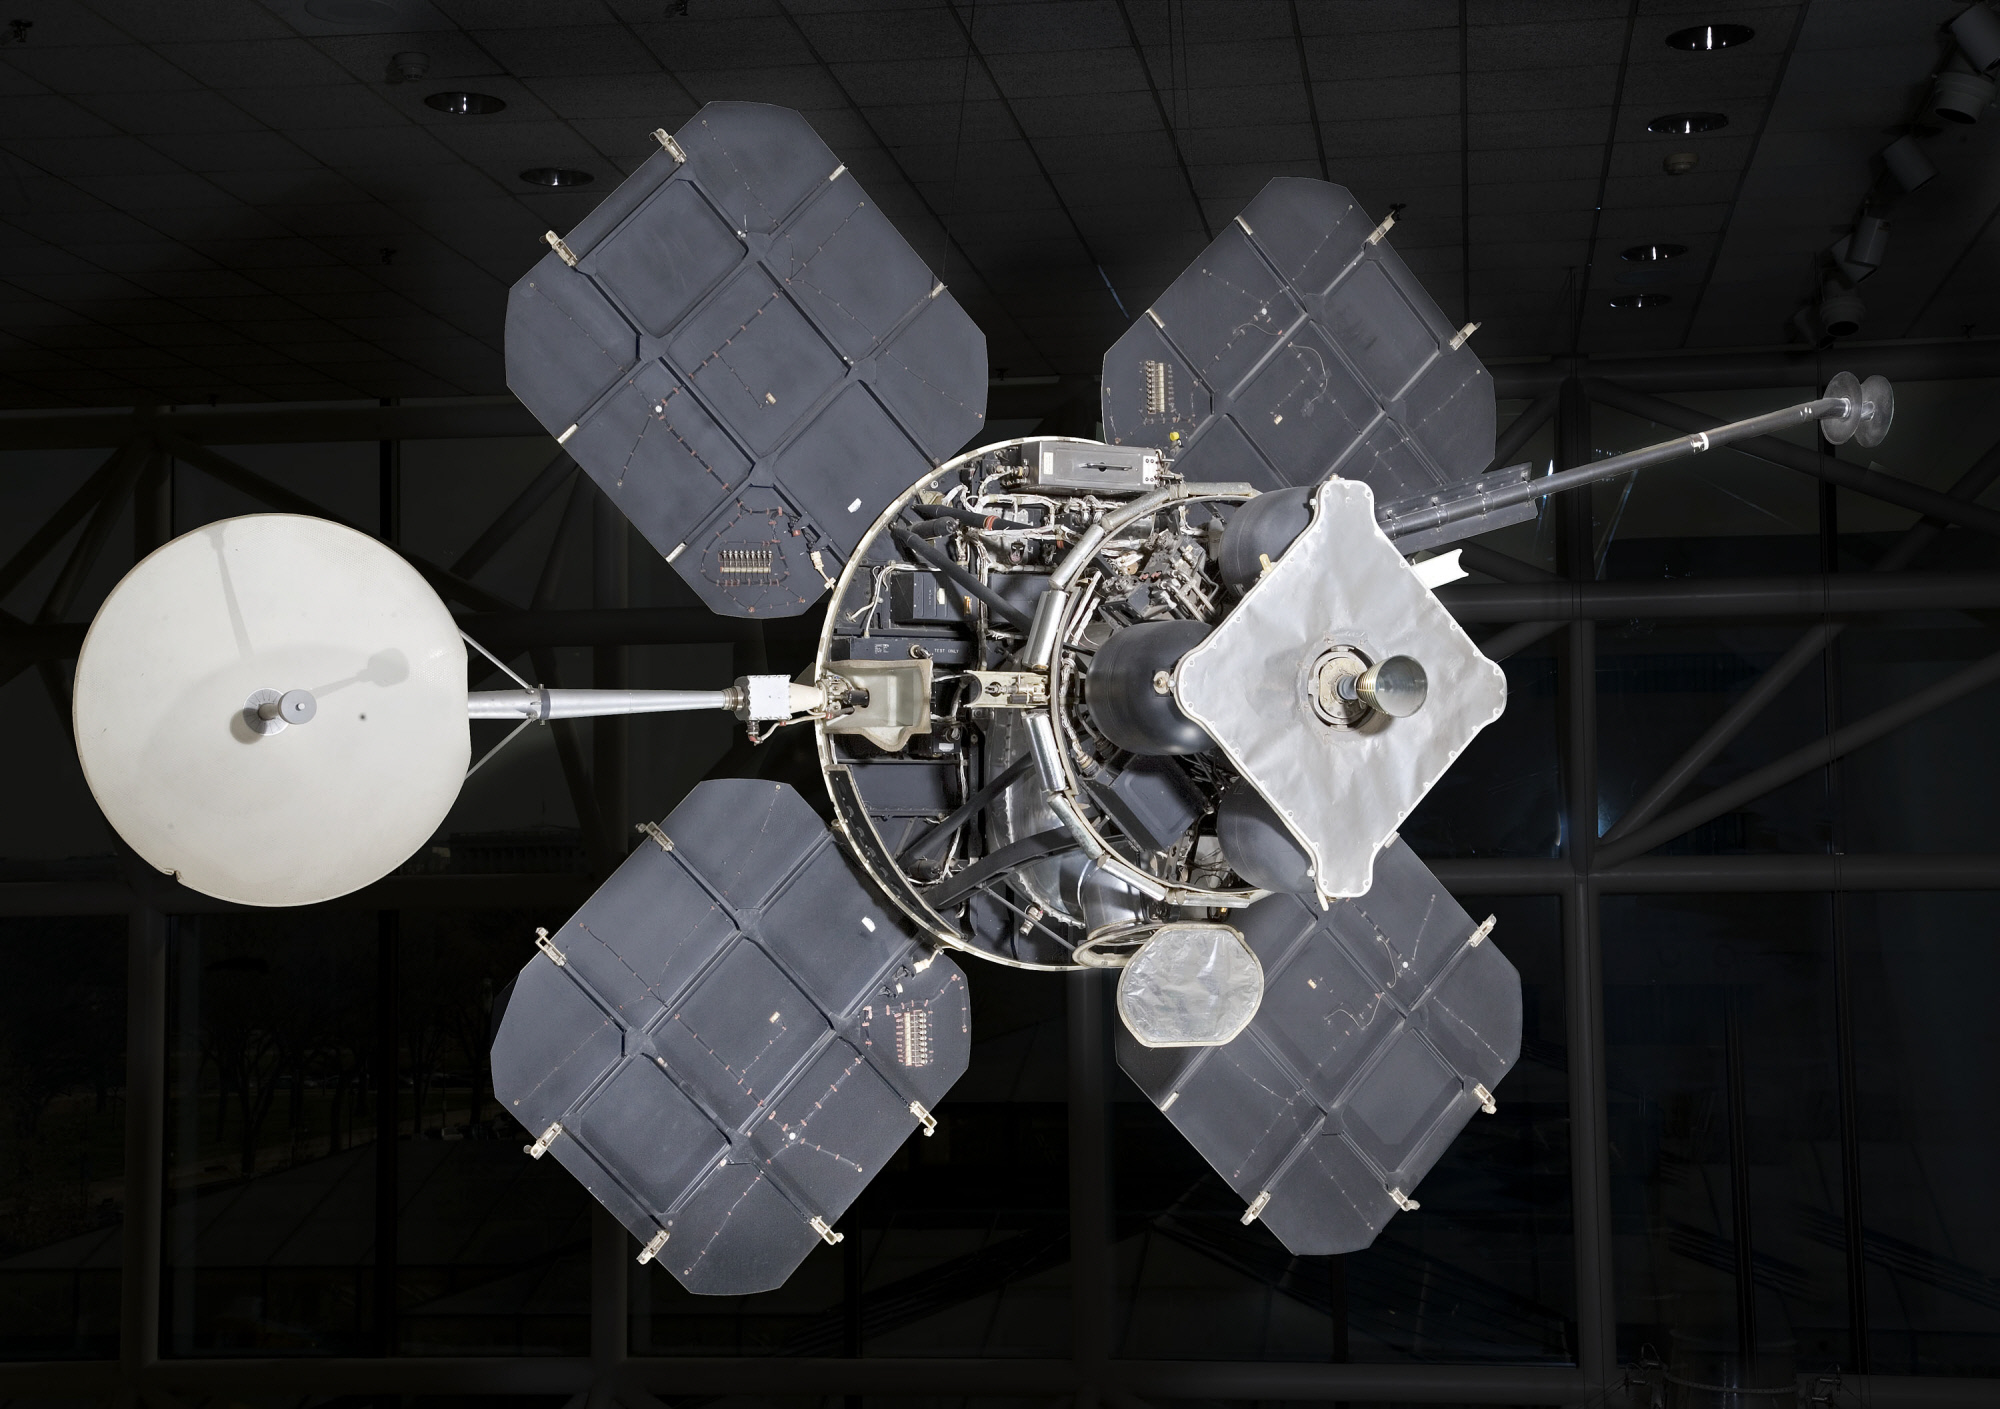 A Lunar Orbiter spacecraft